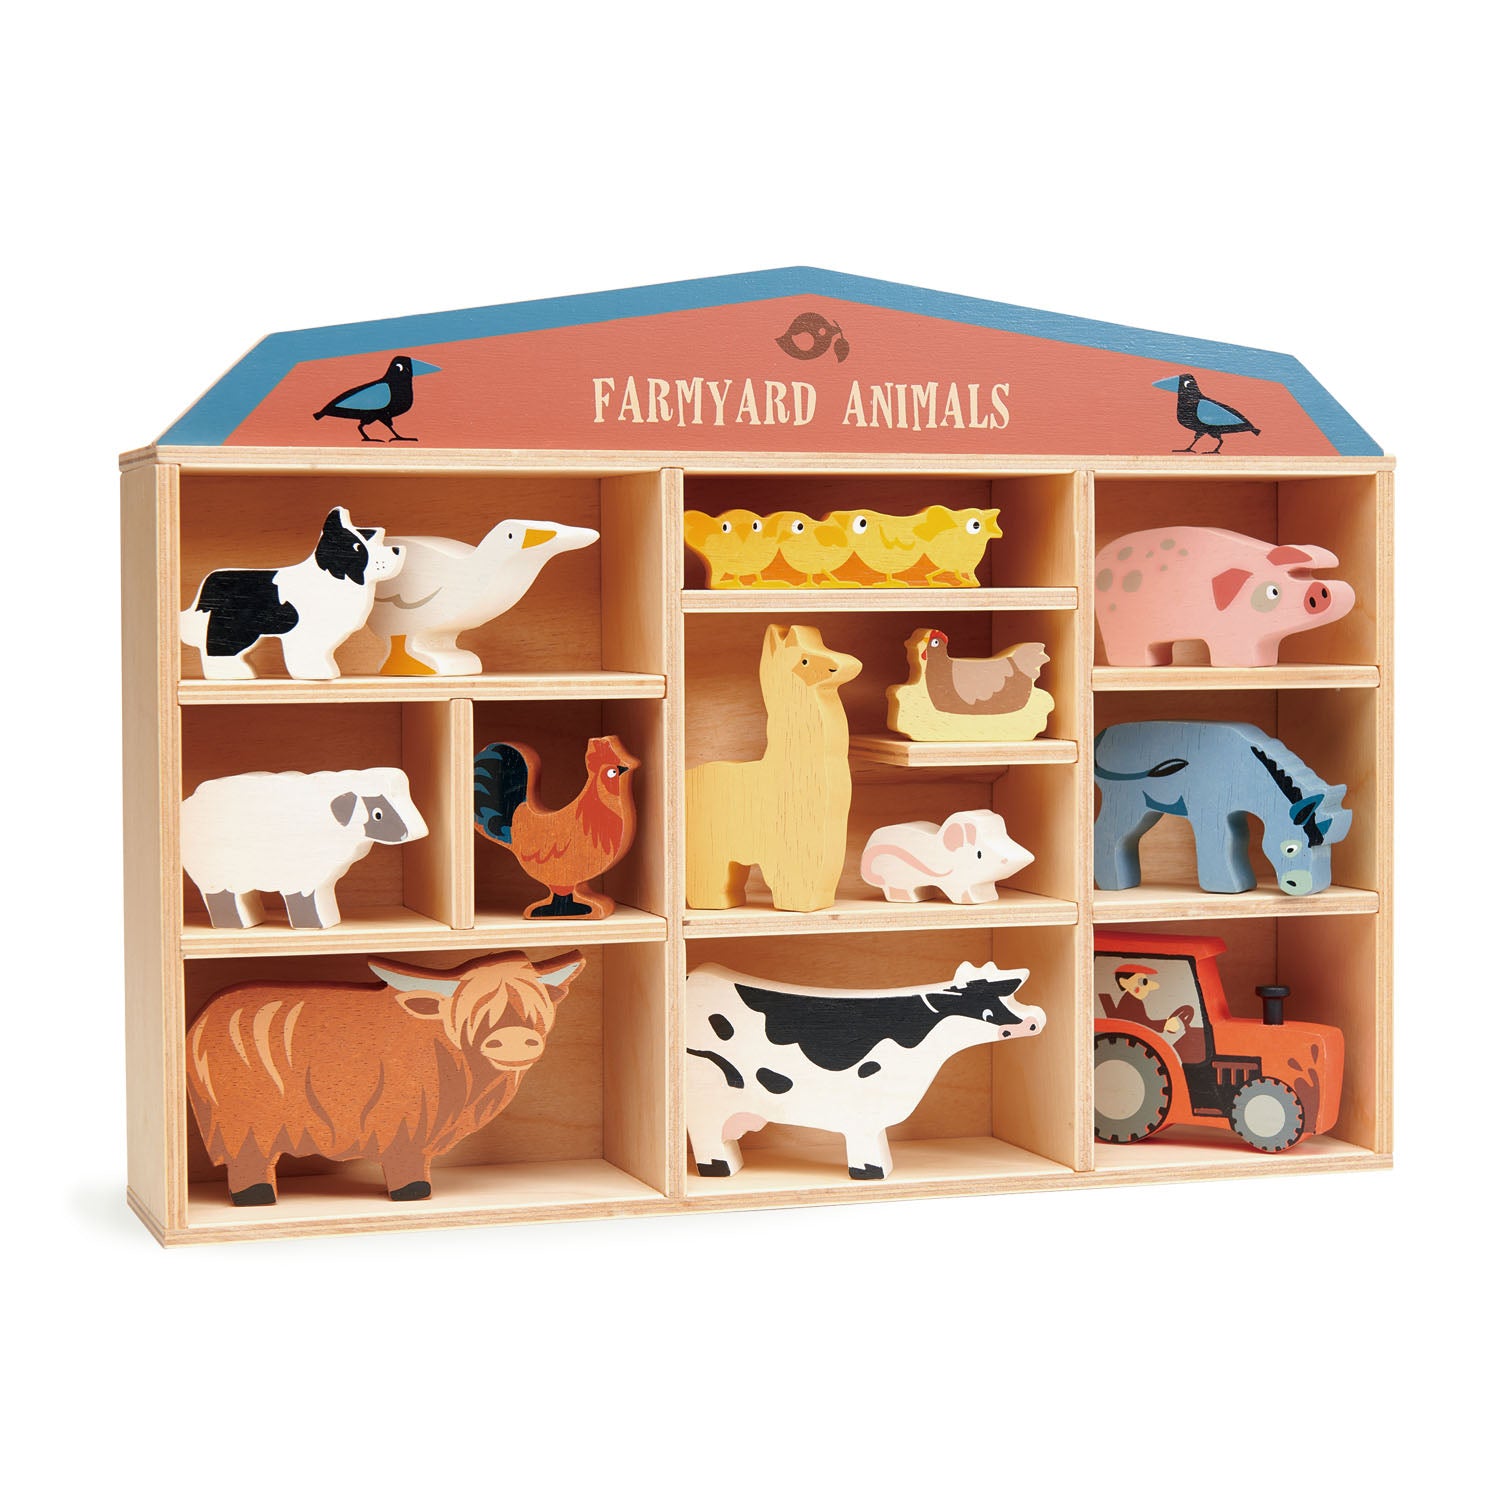 Tender Leaf Toys Wooden Farmyard Animals and Shelf Set